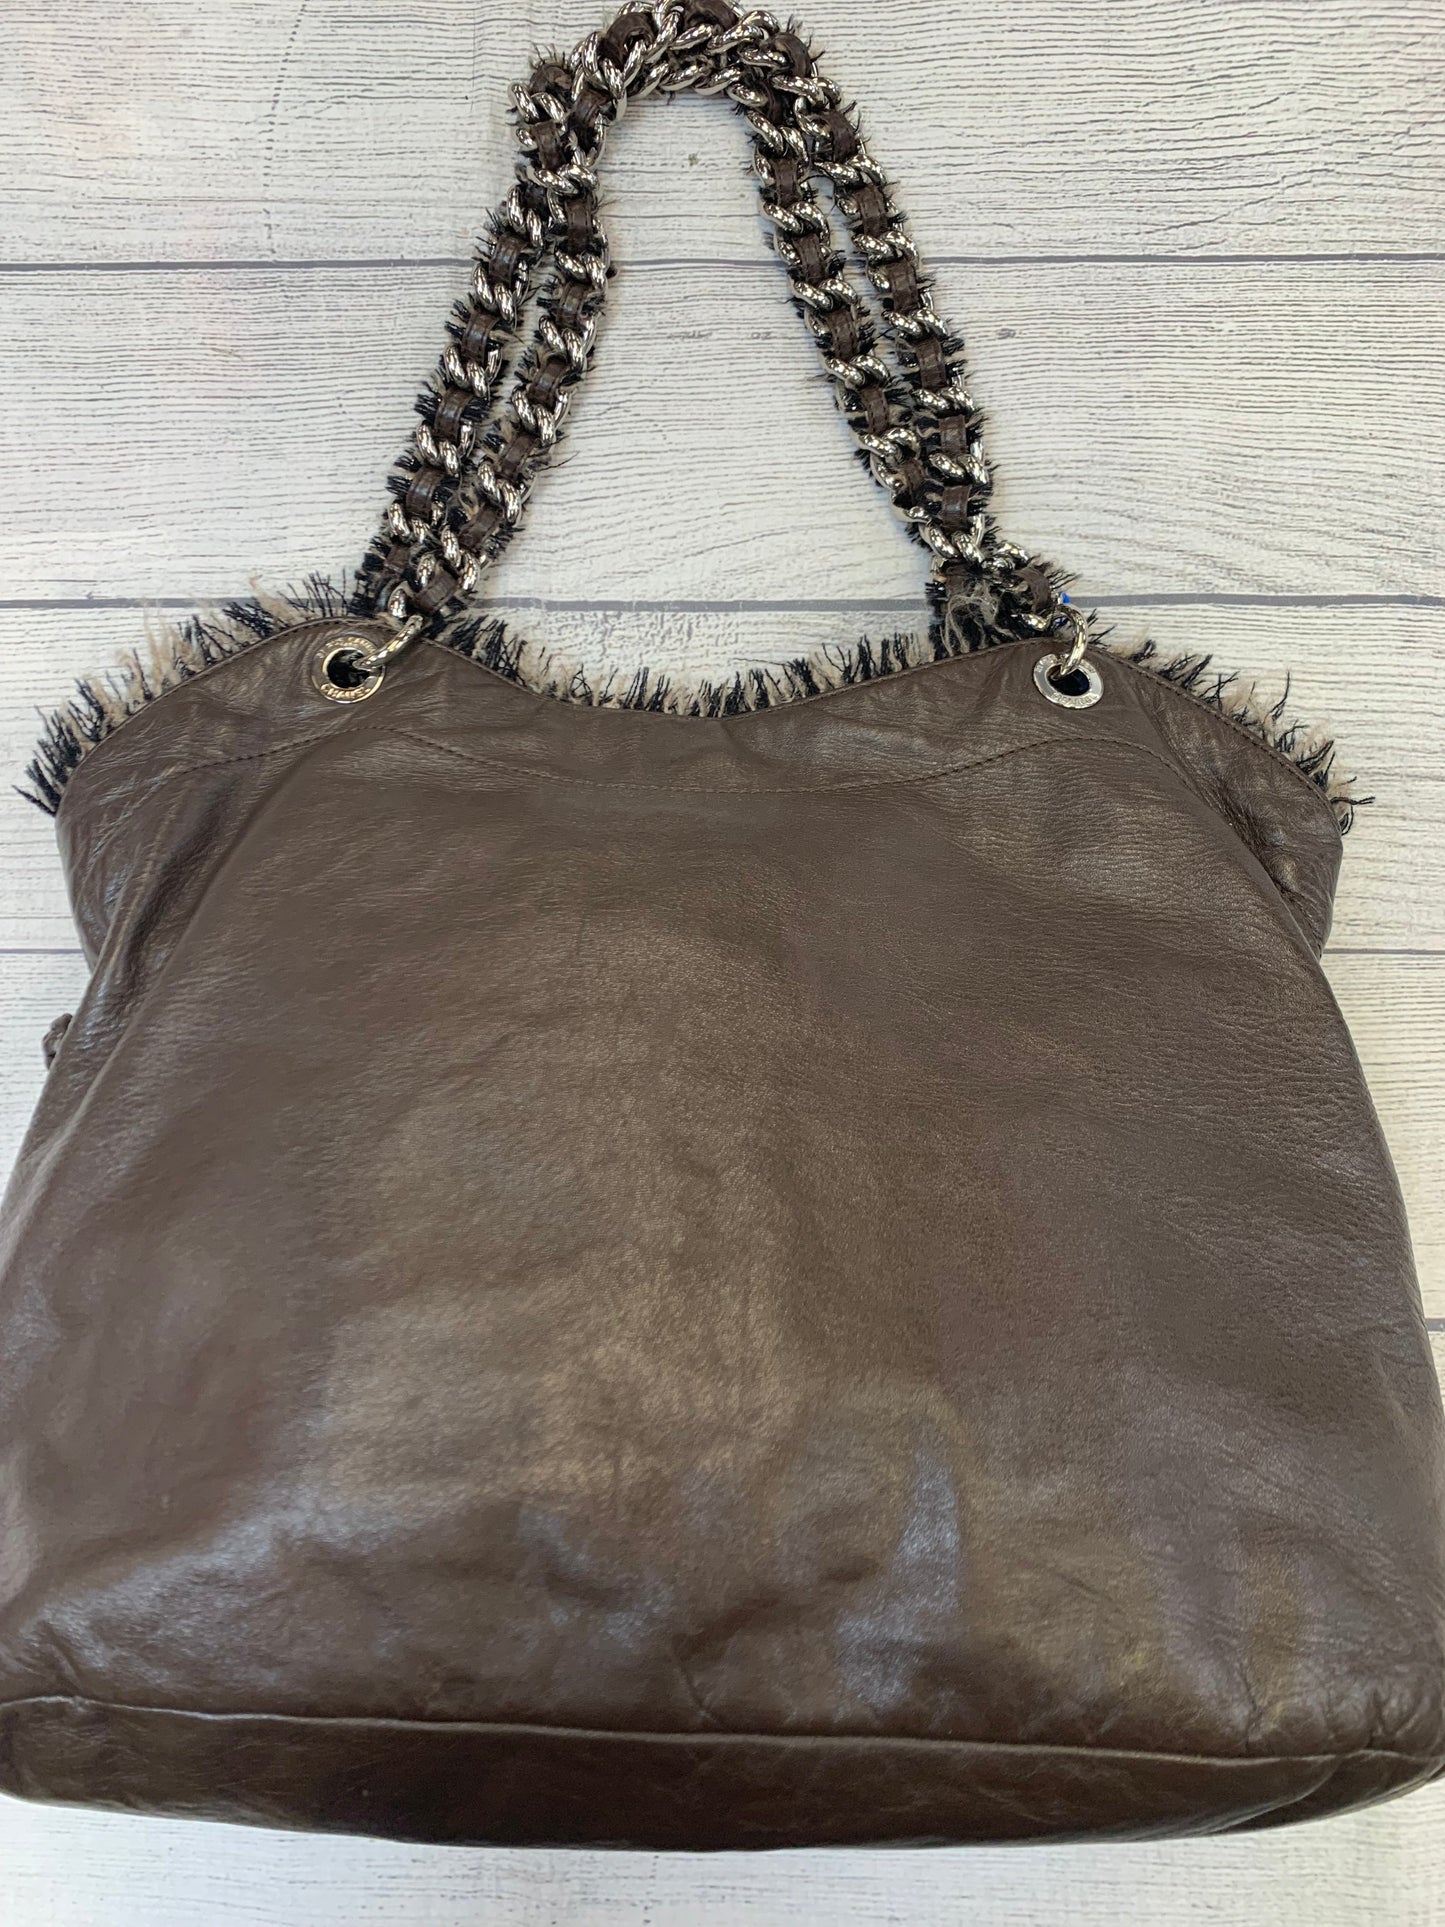 Handbag Designer By Chanel  Size: Large